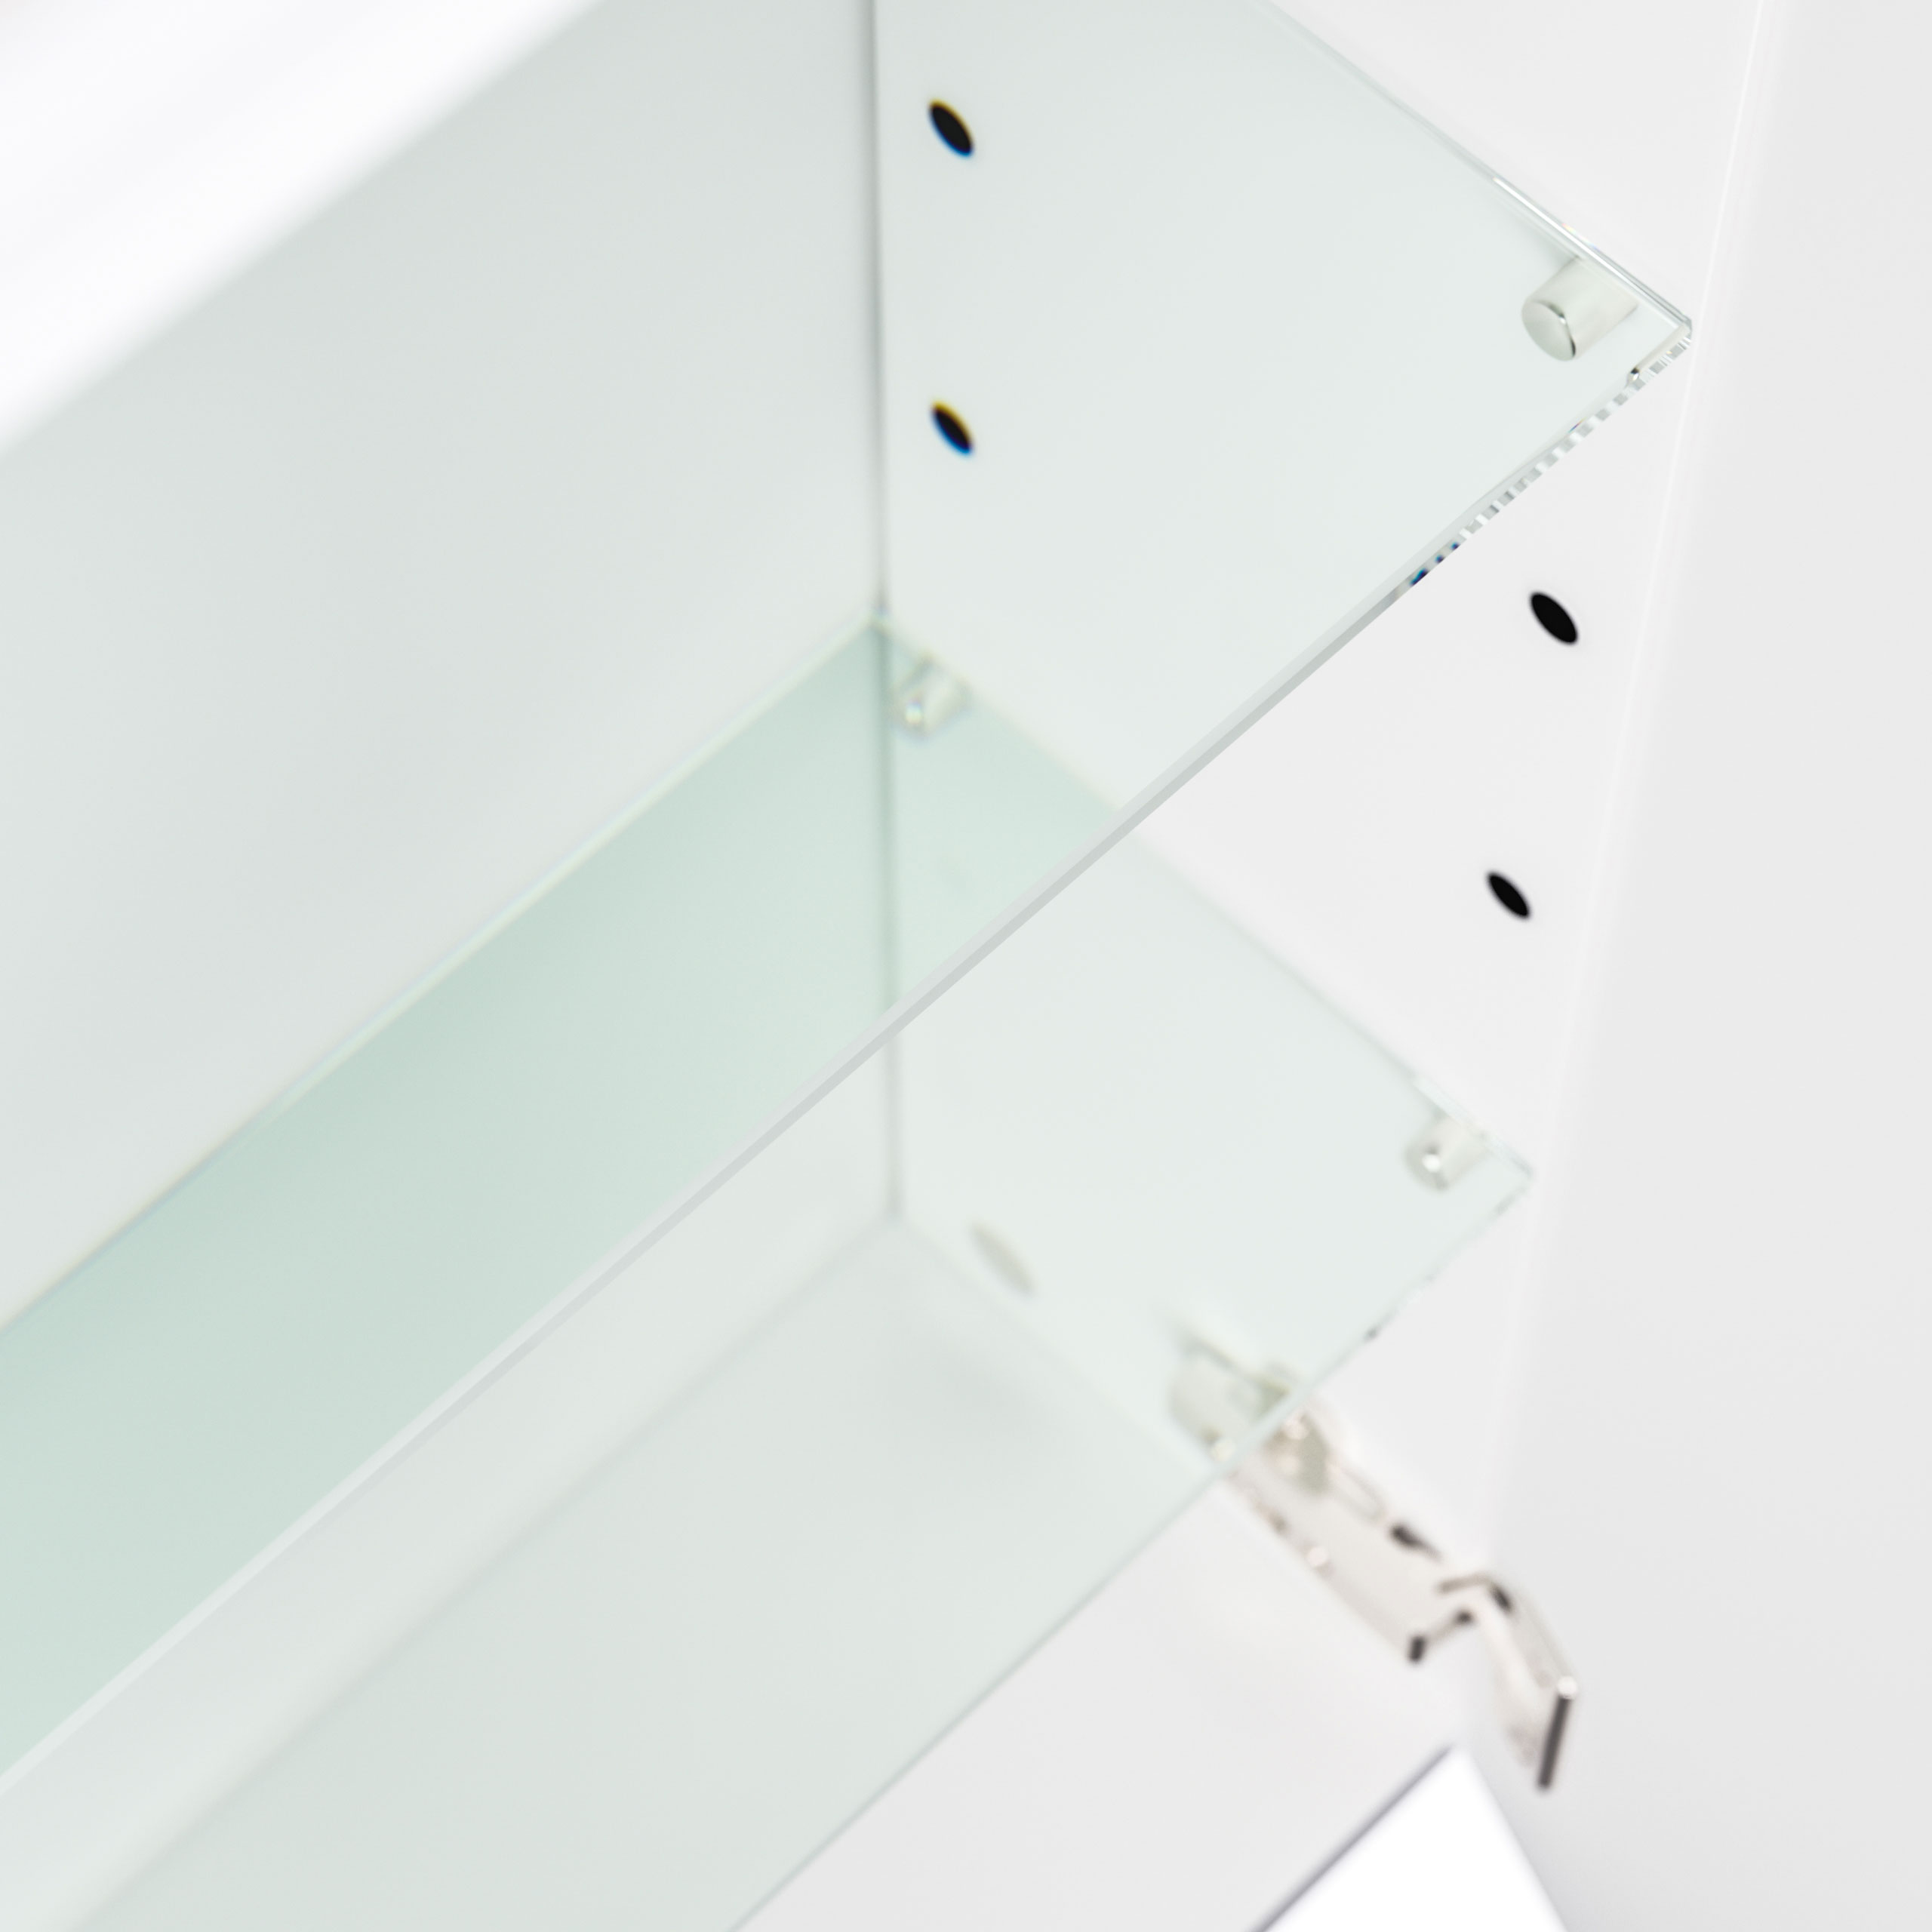 Spiegelschrank 140cm inkl. Design Acryl-Lampe und Glasböden schwarz seidenglanz